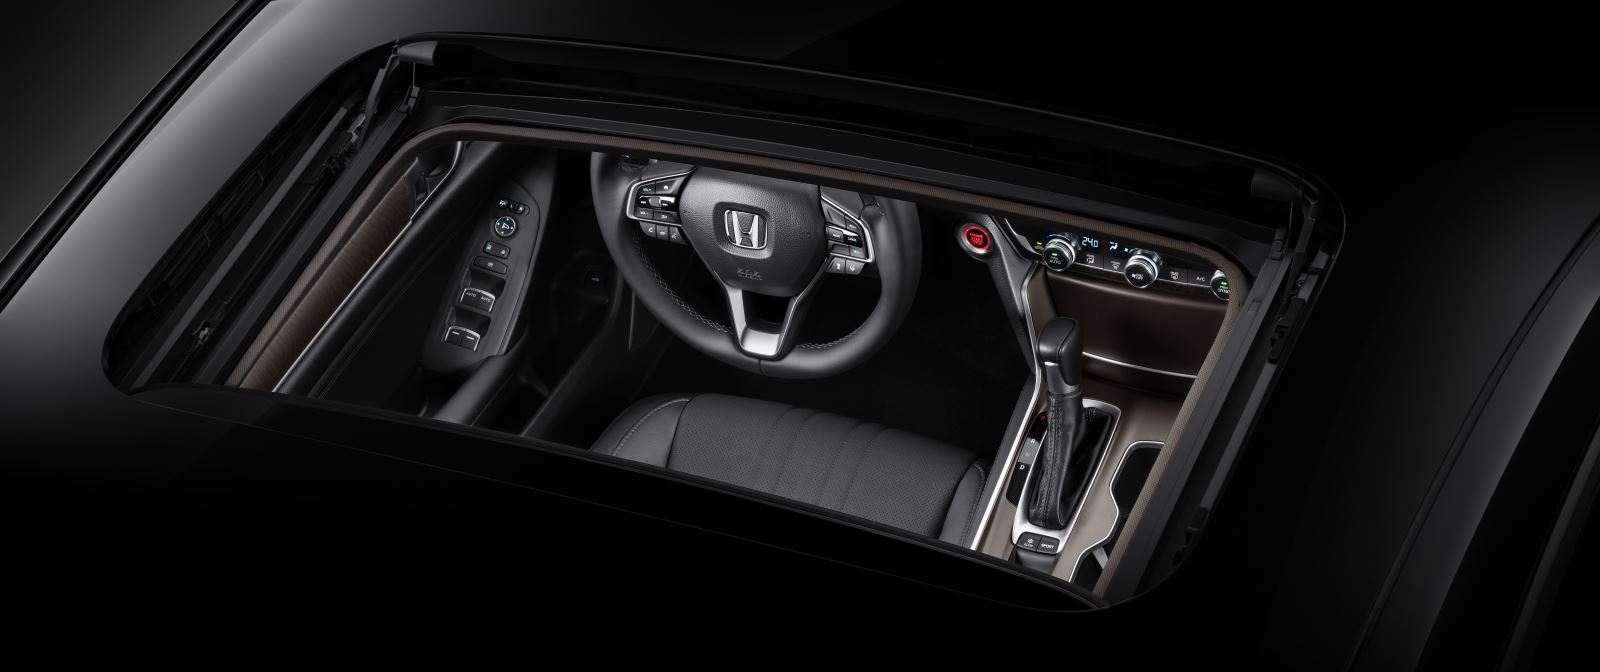 Honda Accord 2022 sẽ có cửa sổ trời